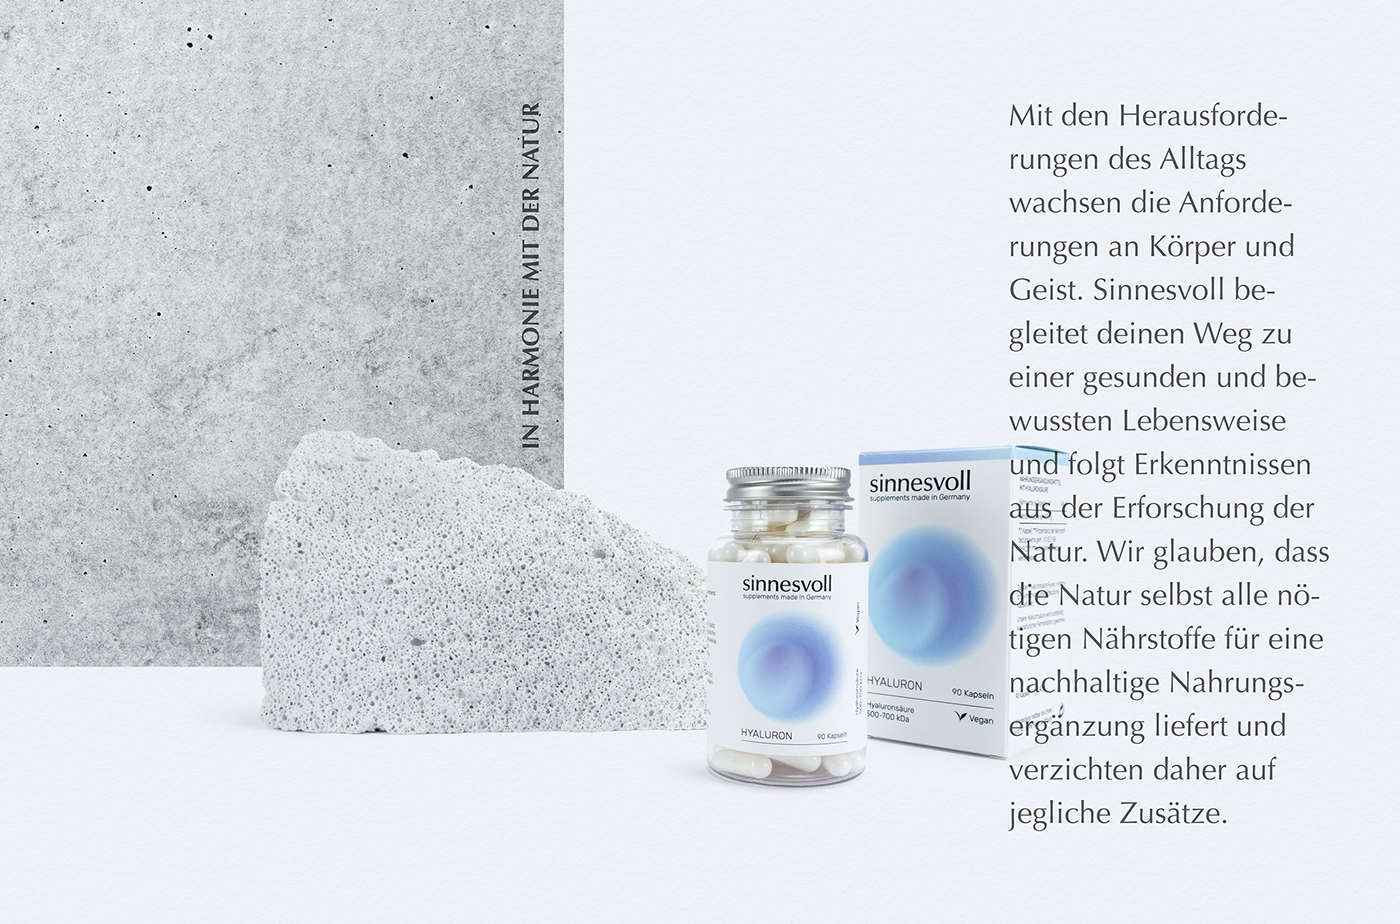 sinnesvoll supplements Packaging design ILLUSTRATION  graphic design  Frankfurt am Main germany kommunikationsdesigner Logo Design